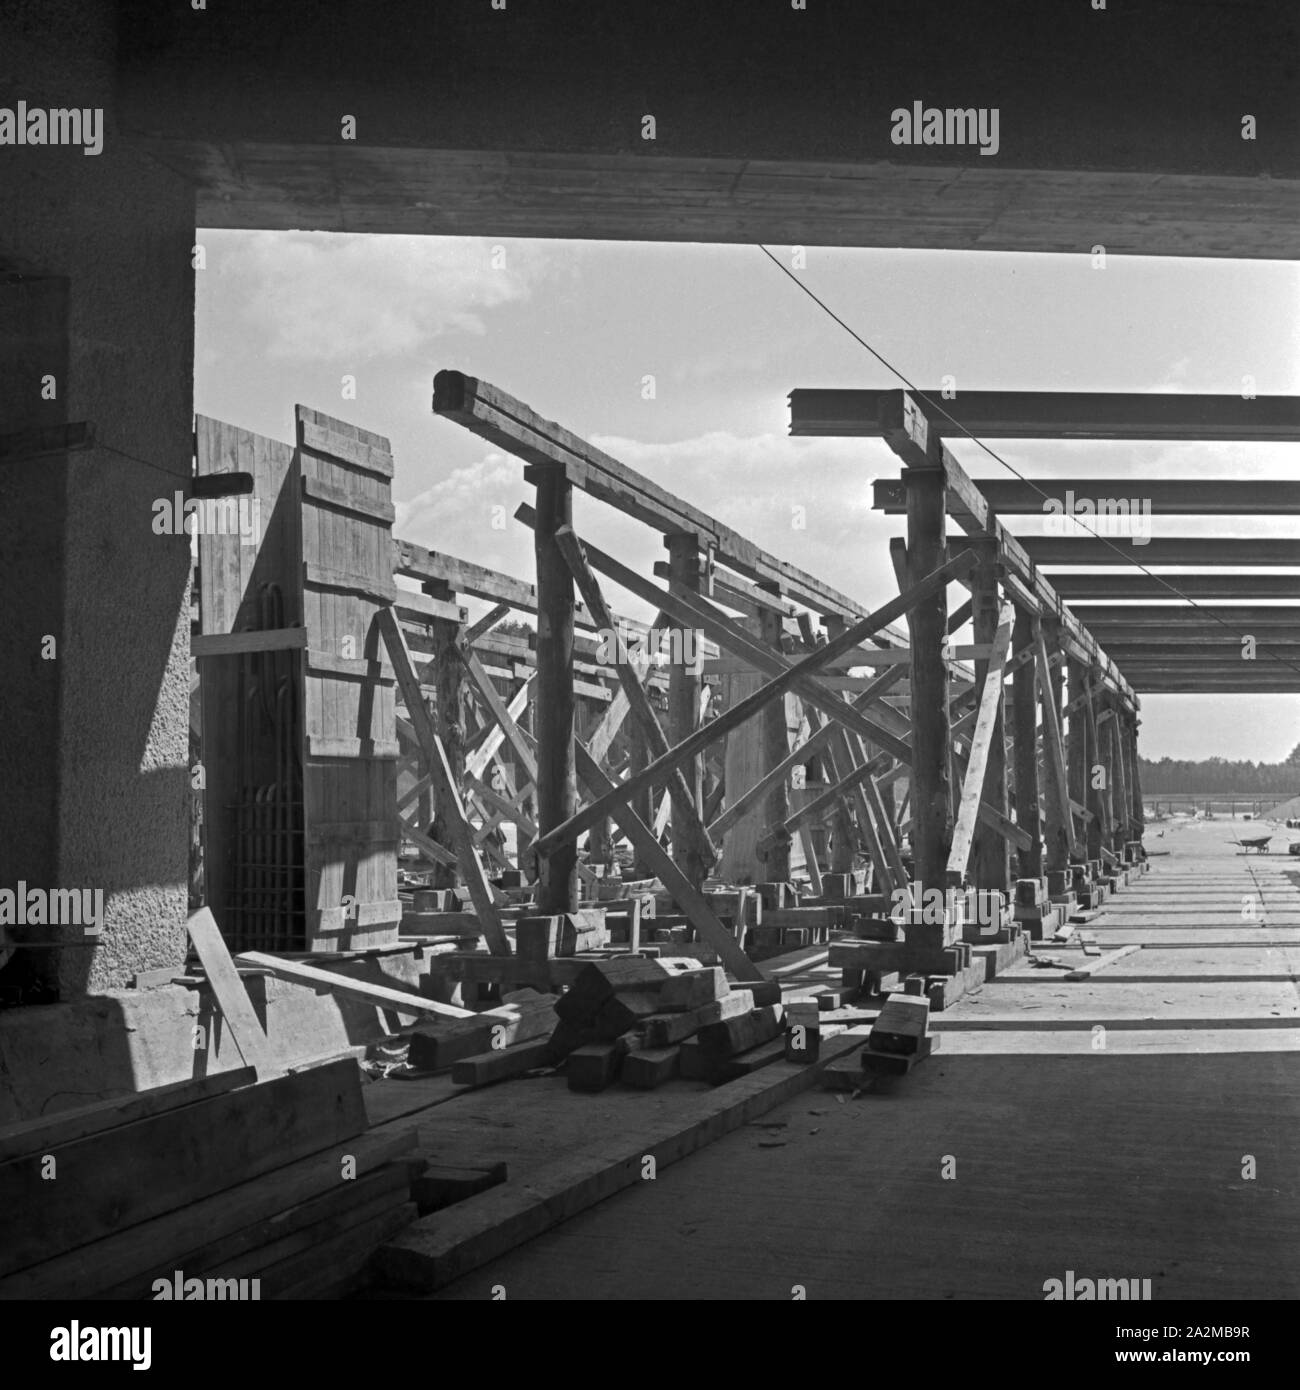 Original-Bildunterschrift: Reichsautobahnzubringer Berlin - Brückenverschalung an einer Überführung bei Wannsee, Deutschland 1940. Motor feeder at Reichsautobahn highway - boarding at a bridge near Wannsee, Germany 1940. Stock Photo